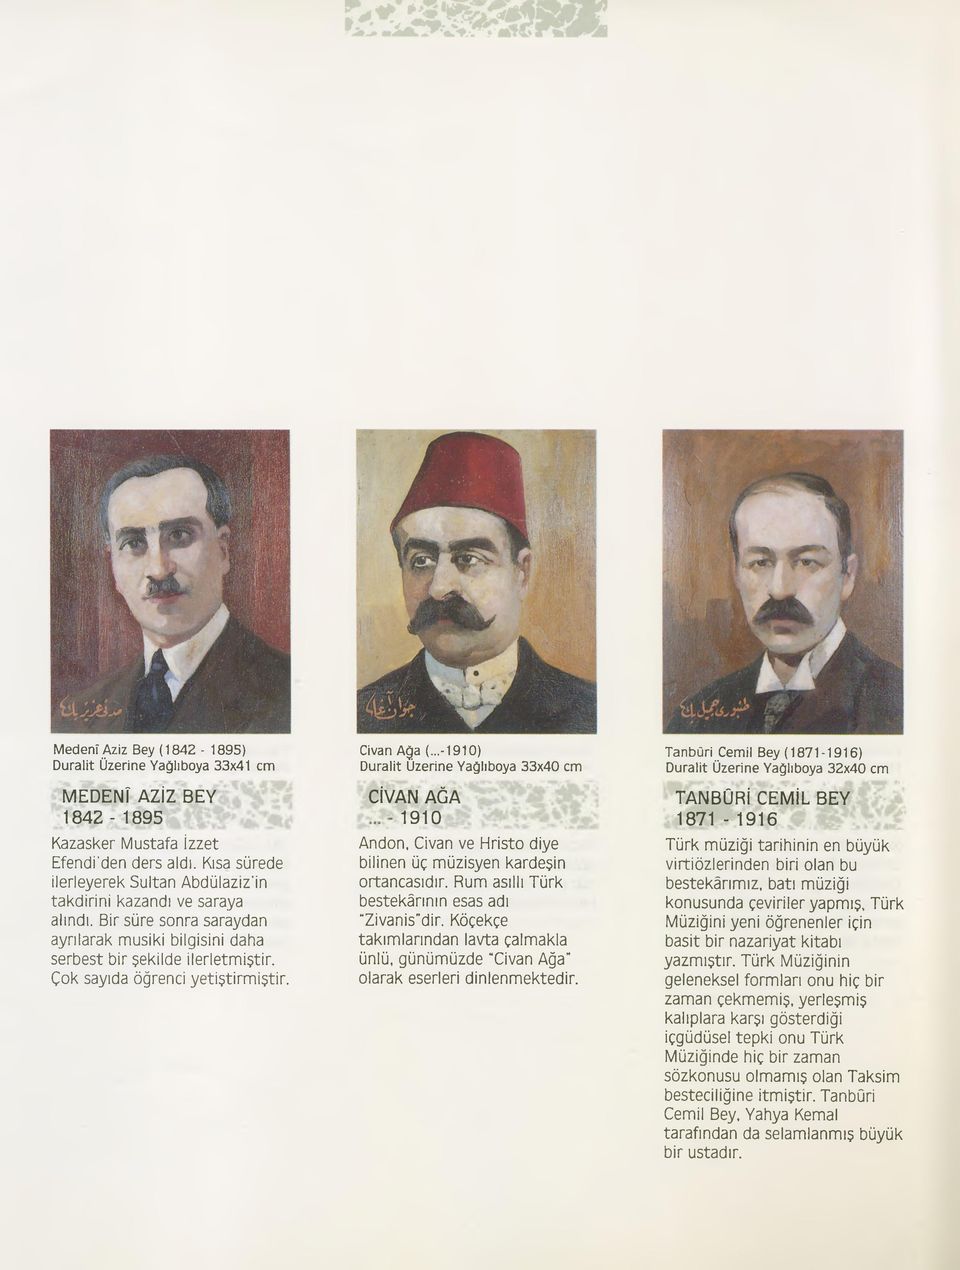 Çok sayıda öğrenci yetiştirmiştir. Civan Ağa (...-1910) CİVAN AĞA 1910 Andon, Civan ve Hristo diye bilinen üç müzisyen kardeşin ortancasıdır. Rum asıllı Türk bestekârının esas adı Zivanis dir.